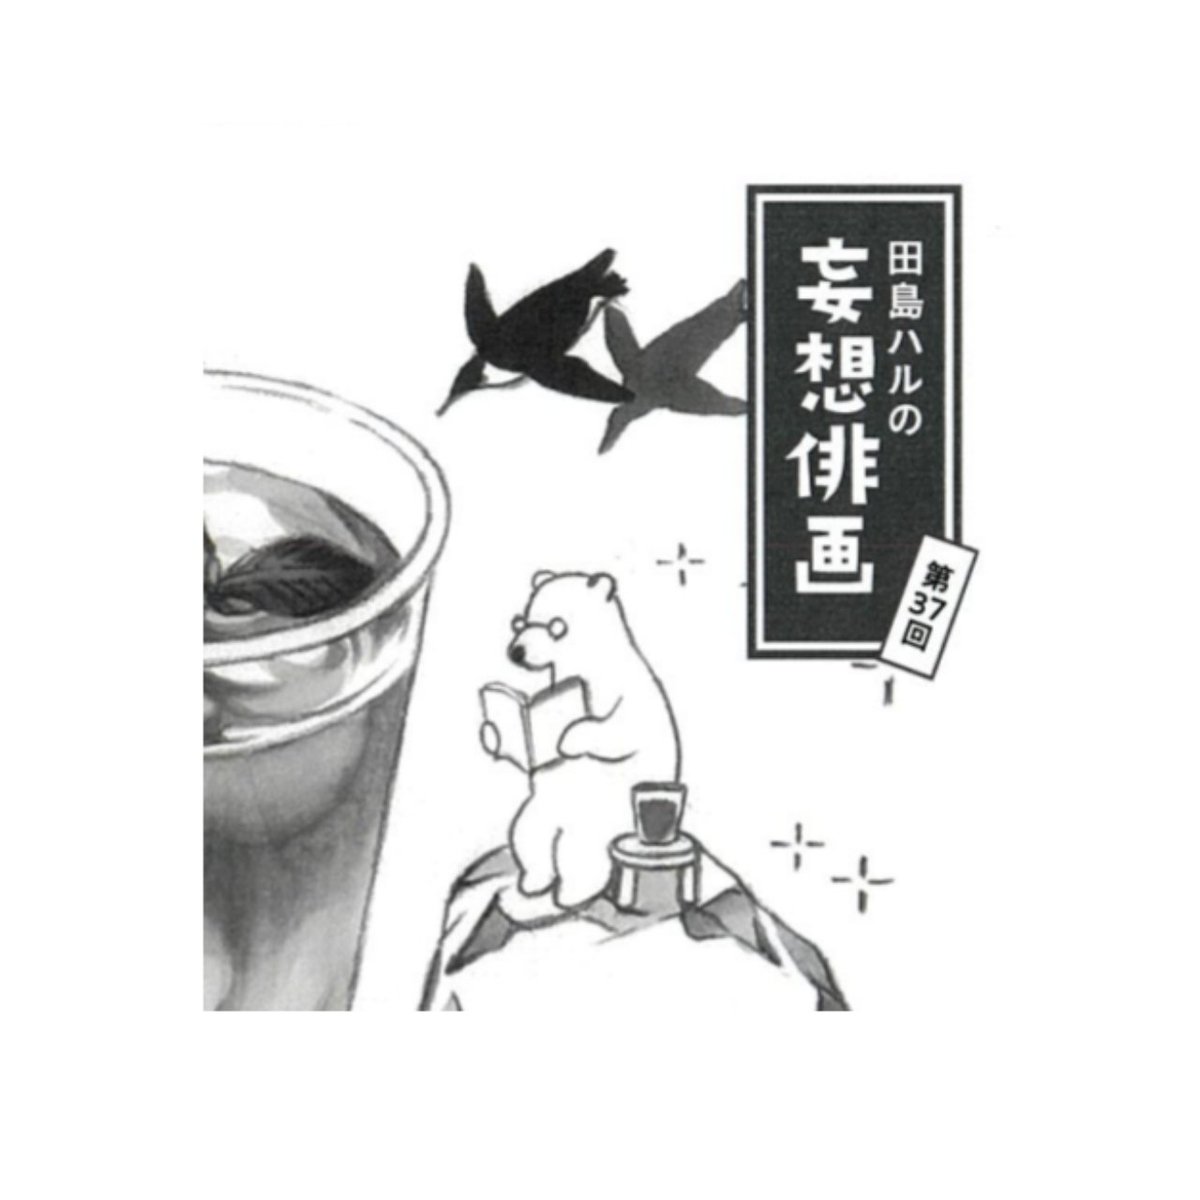 角川「俳句」8月号発売中。#田島ハルの妄想俳画 第37回目載ってます。今回は西生ゆかりさまの句から俳画とエッセイを書きました。キンキンに冷やしたアイスティーを飲みながらごゆるりとお楽しみください🐻‍❄️🐧